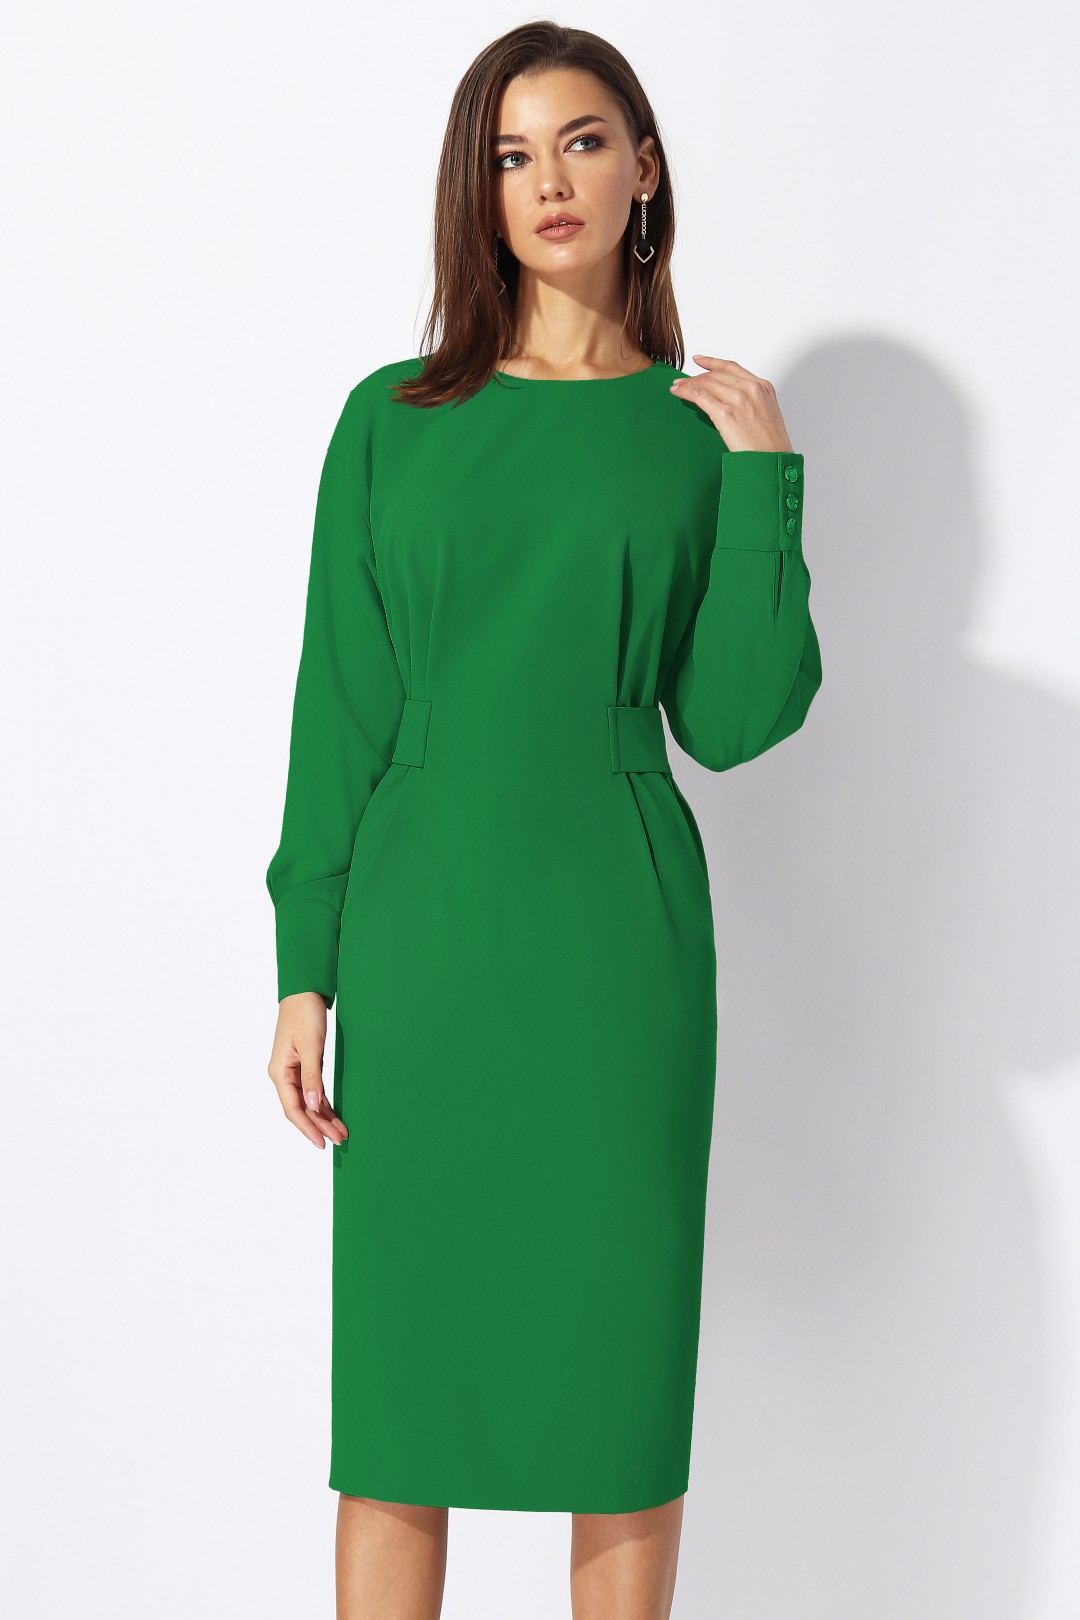 Платье МиА-Мода 1197-2 ярко-зеленый